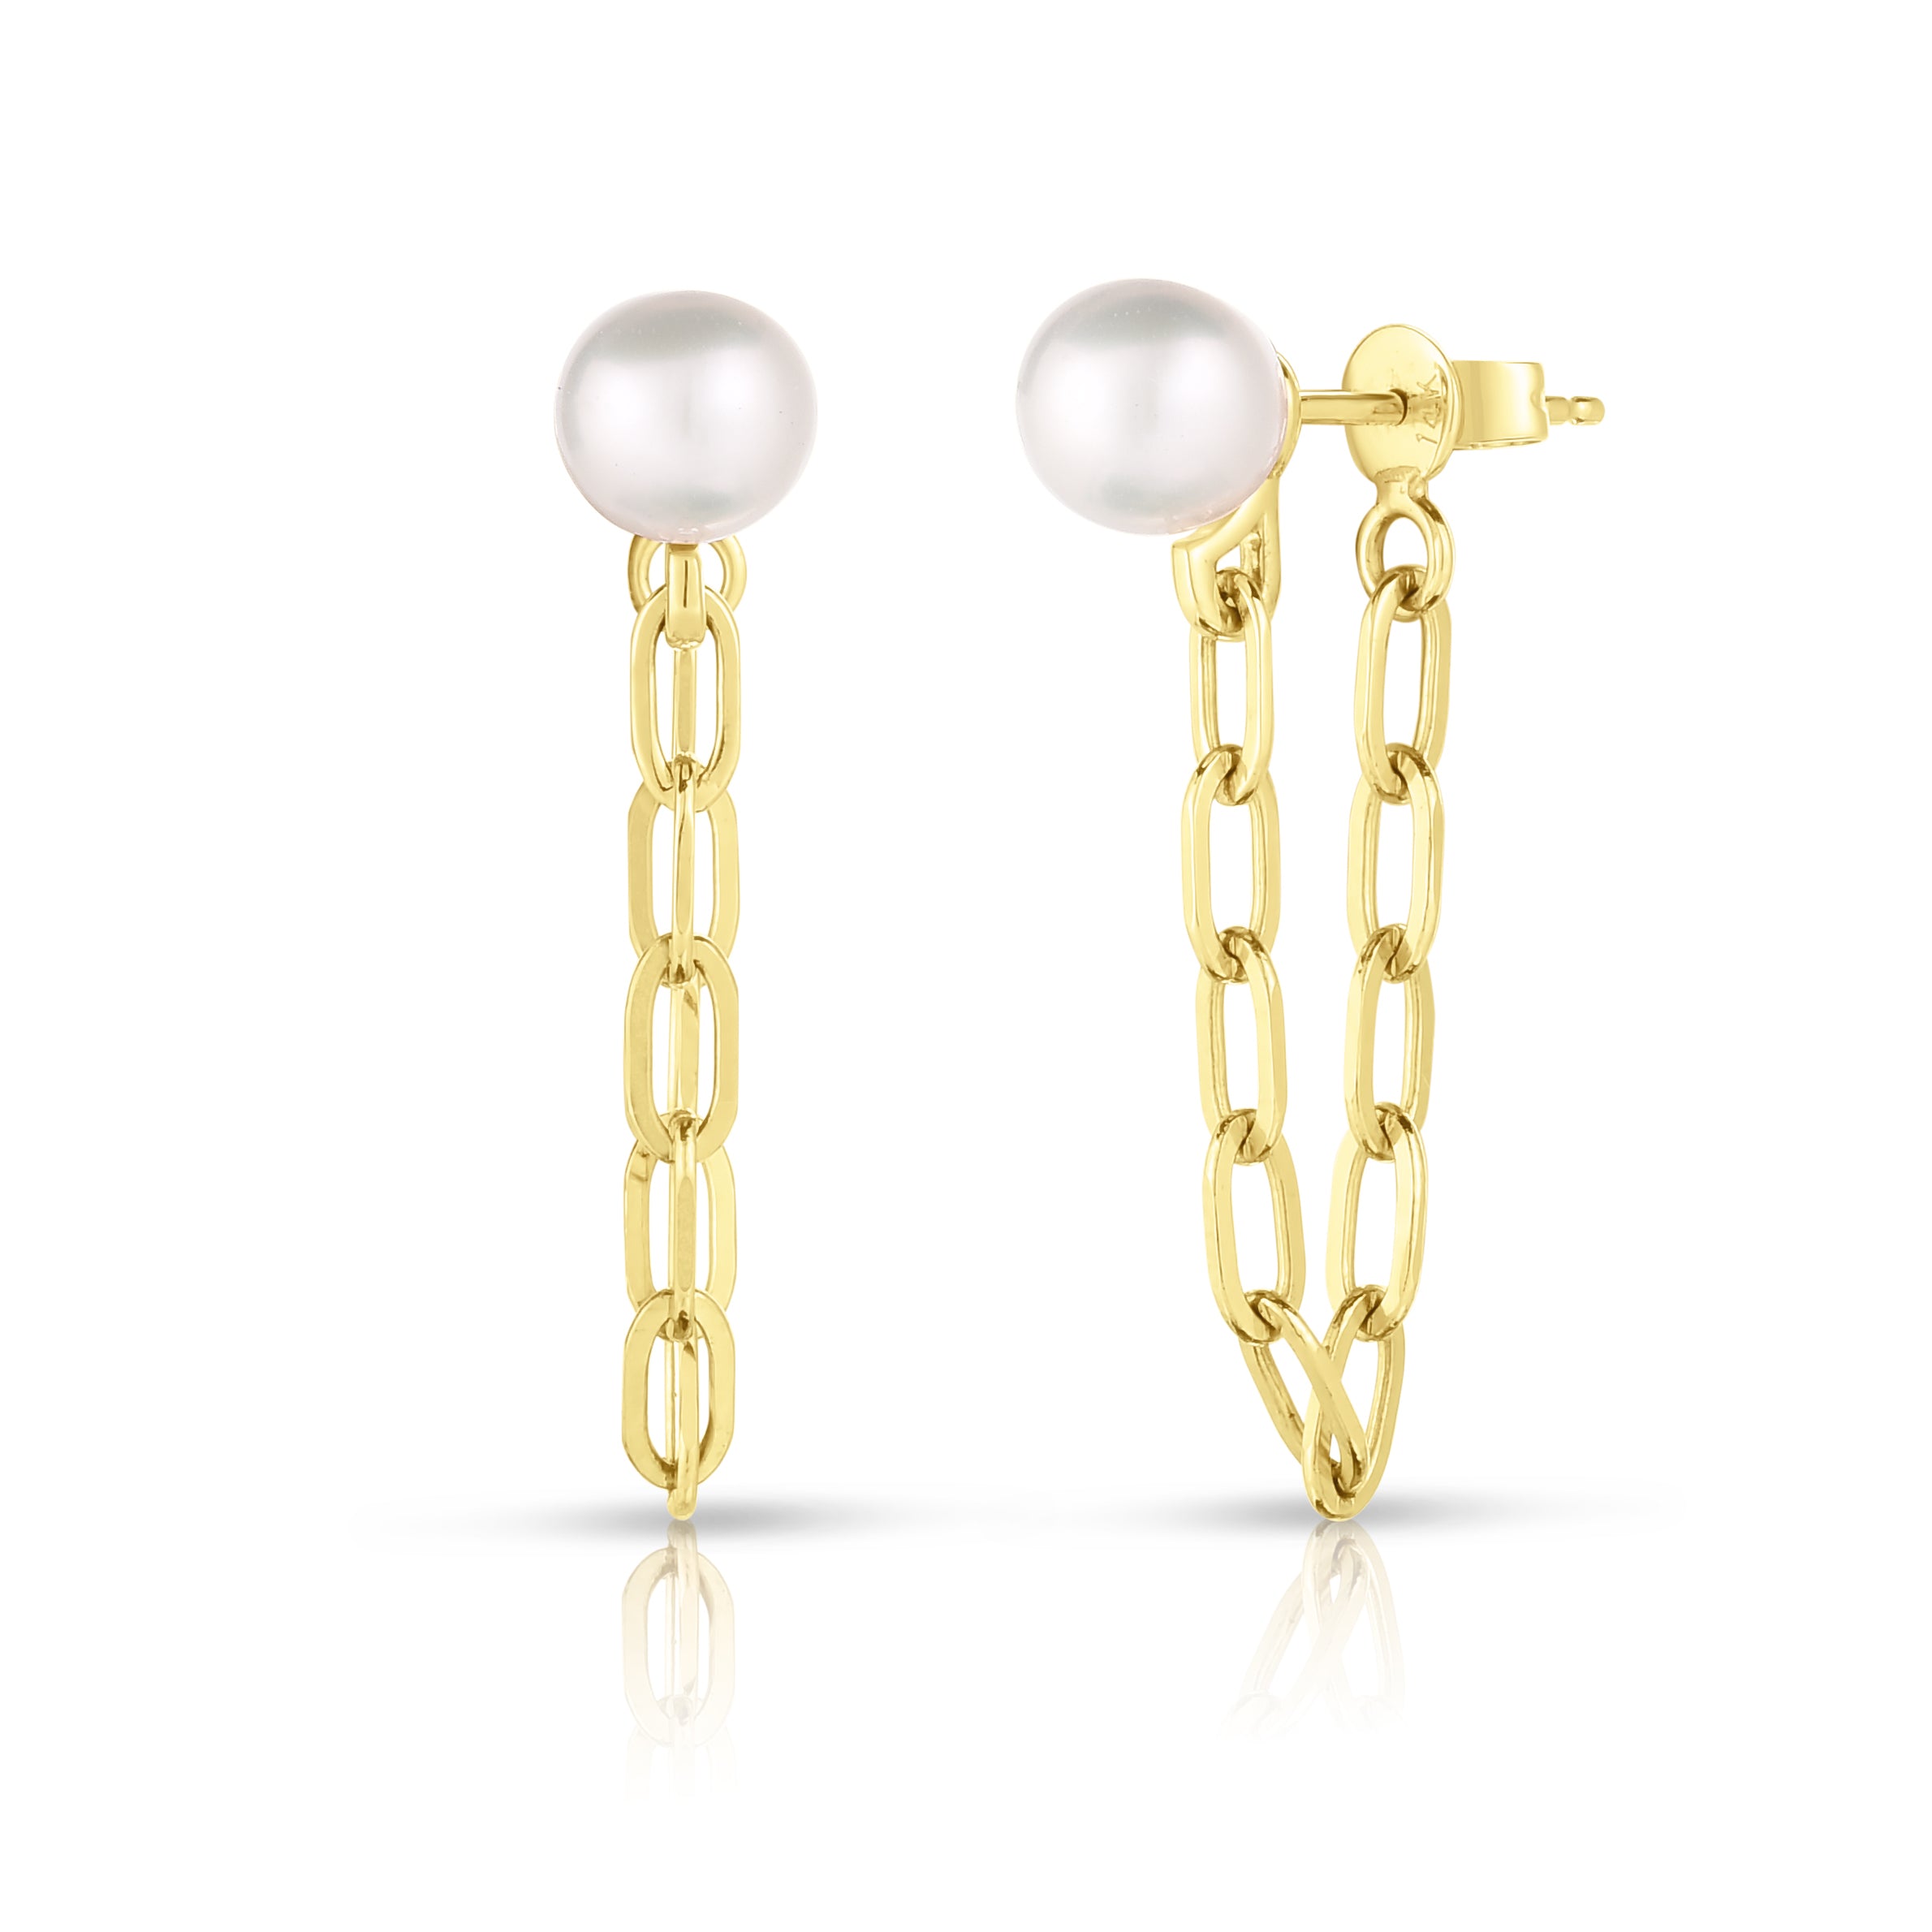 Chain earring – Minimalist ear thread | Edgy jewelry, Long chain earrings,  Edgy earrings